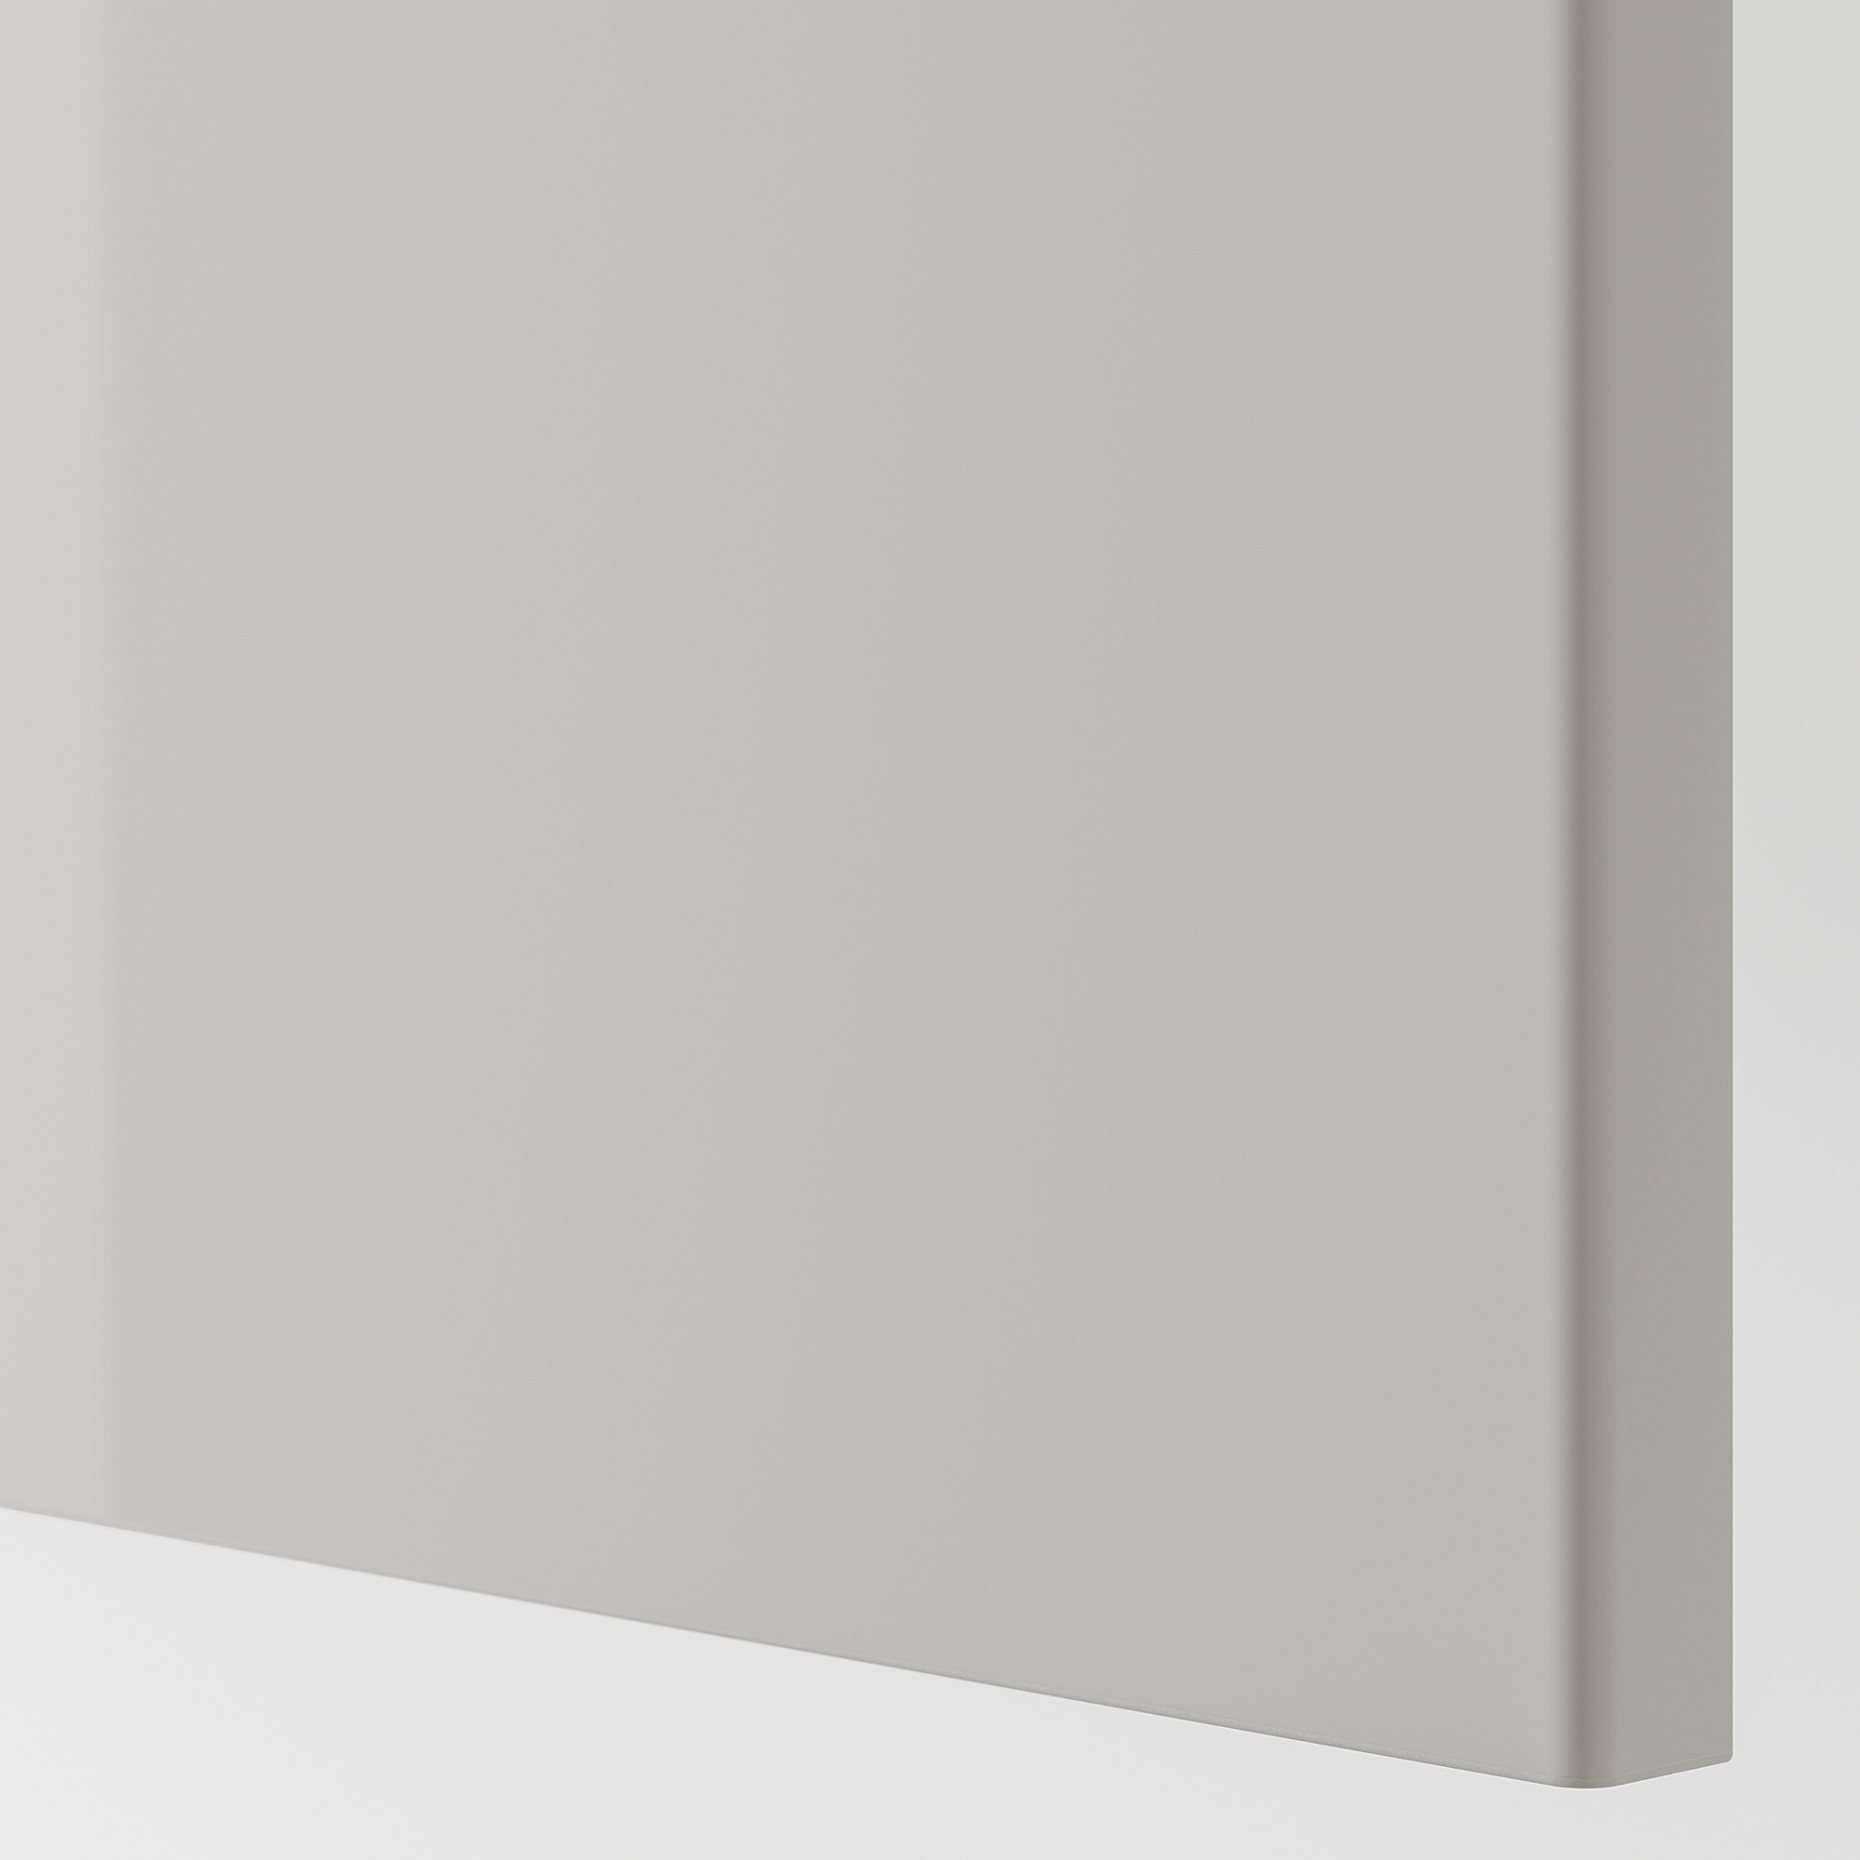 FARDAL, πόρτα με μεντεσέδες, γυαλιστερό/50x229 cm, 791.777.03